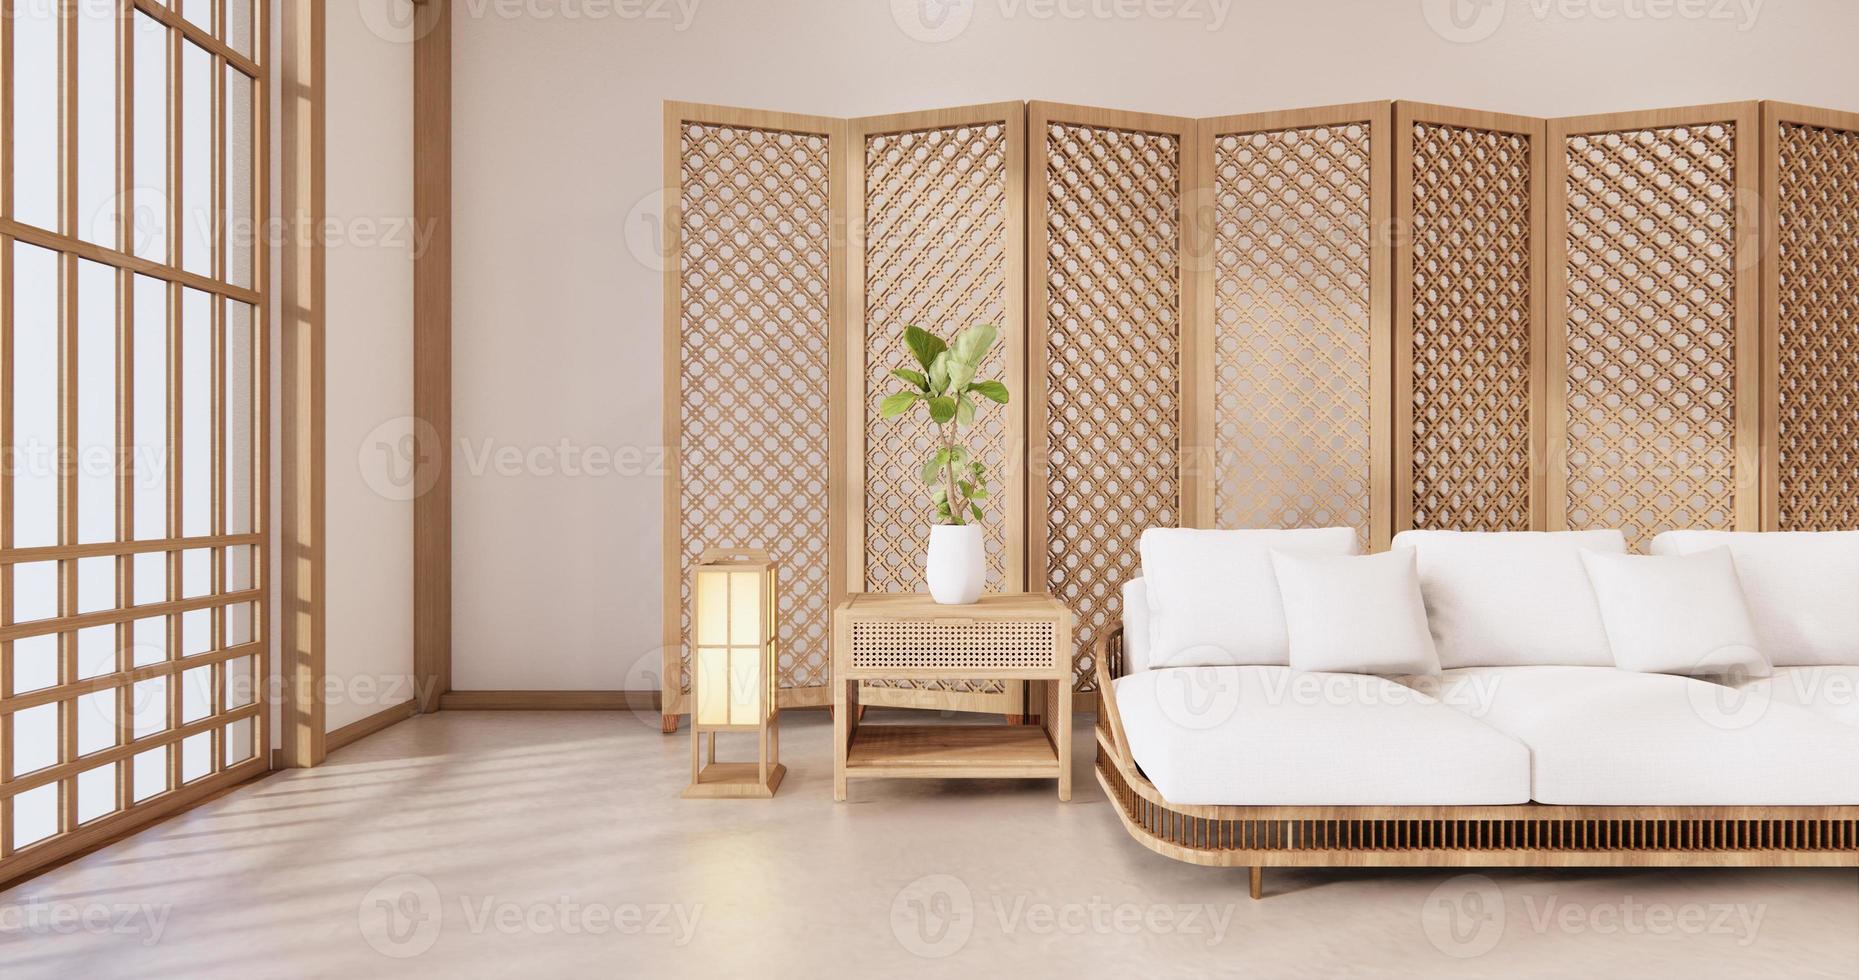 Trennen Sie Japaner auf tropischem Interieur des Zimmers mit Tatami-Mattenboden und weißer Wand. 3D-Rendering foto